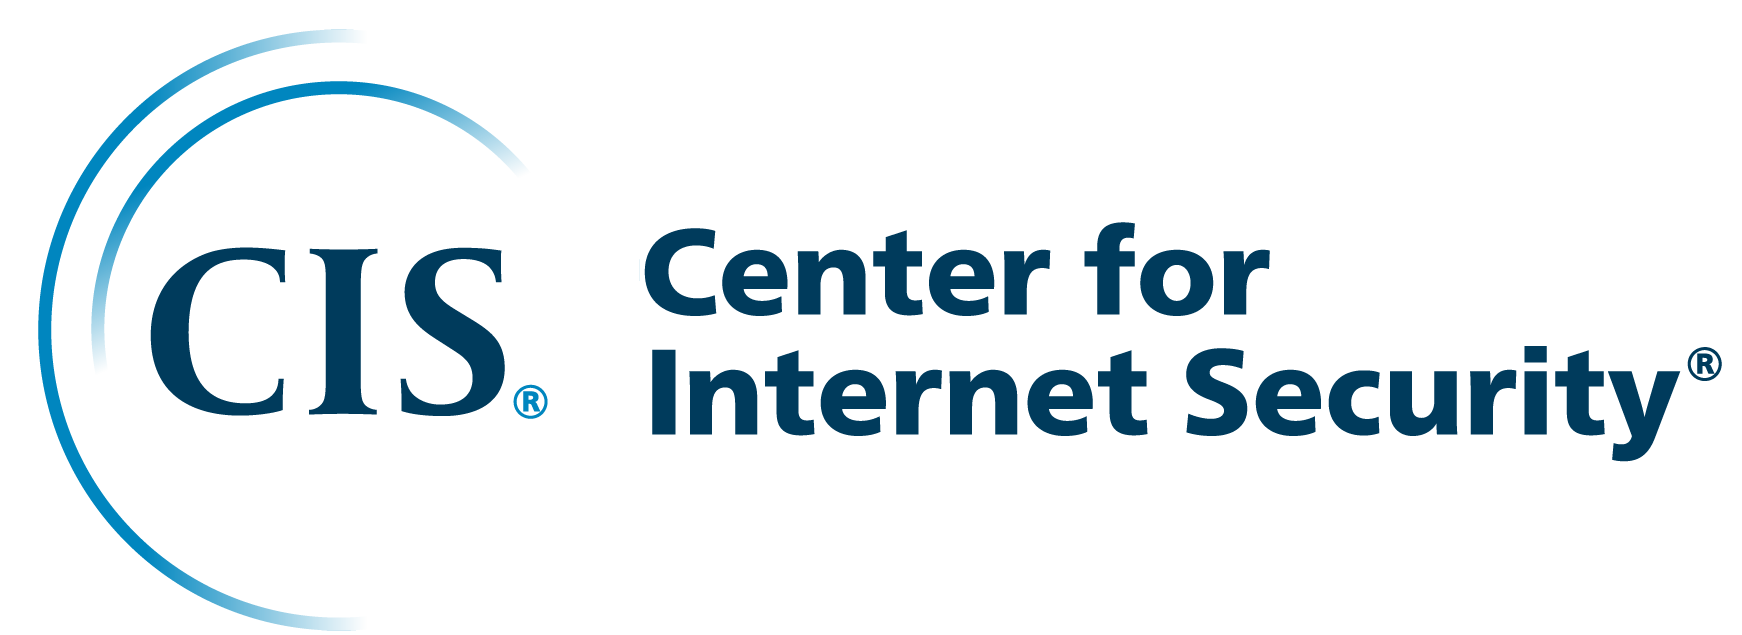 Center for Internet Security (CIS) Company Logo